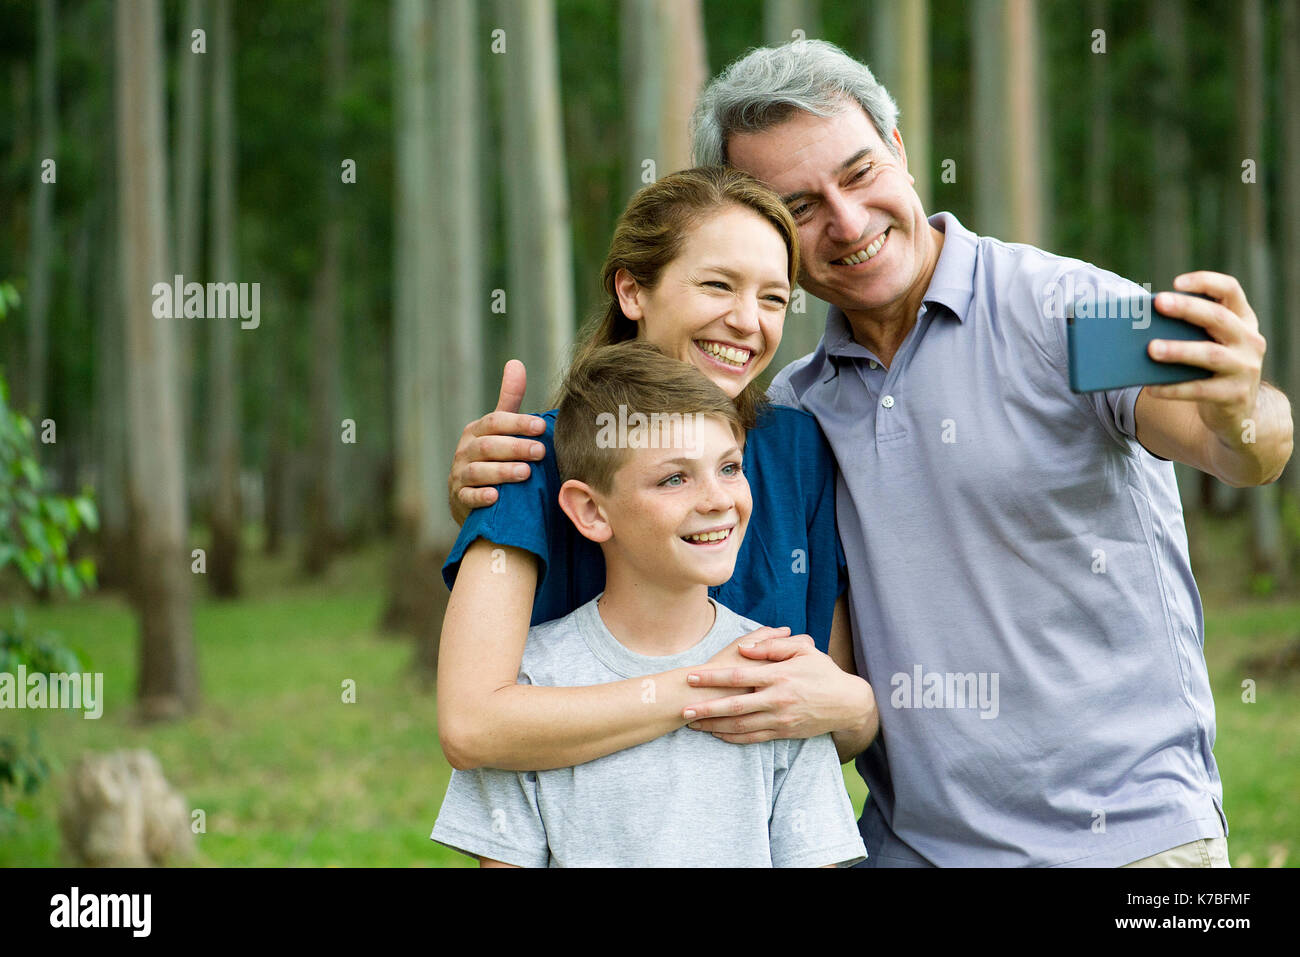 Family posing for selfie Stock Photo